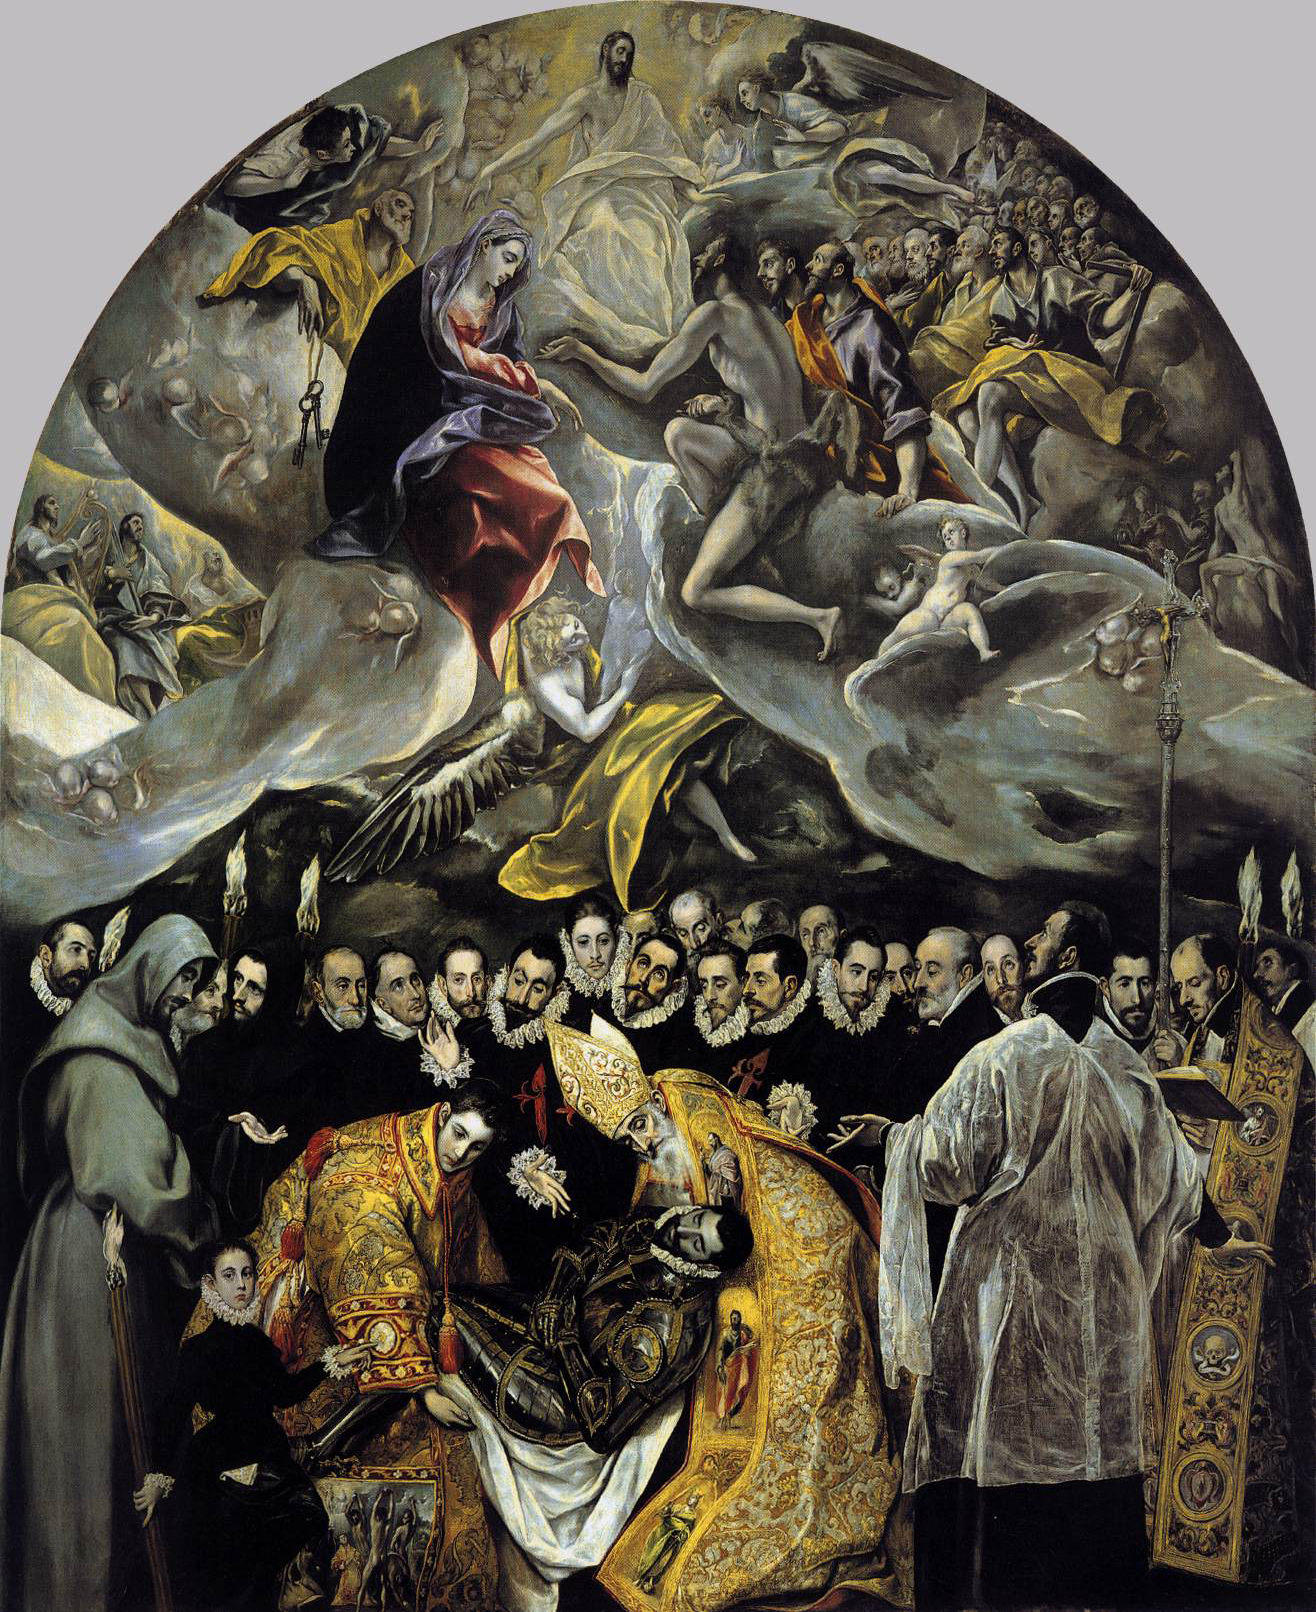 El_Greco_-_The_Burial_of_the_Count_of_Orgaz 1586-88 eglise de Santo Tome, Tolede